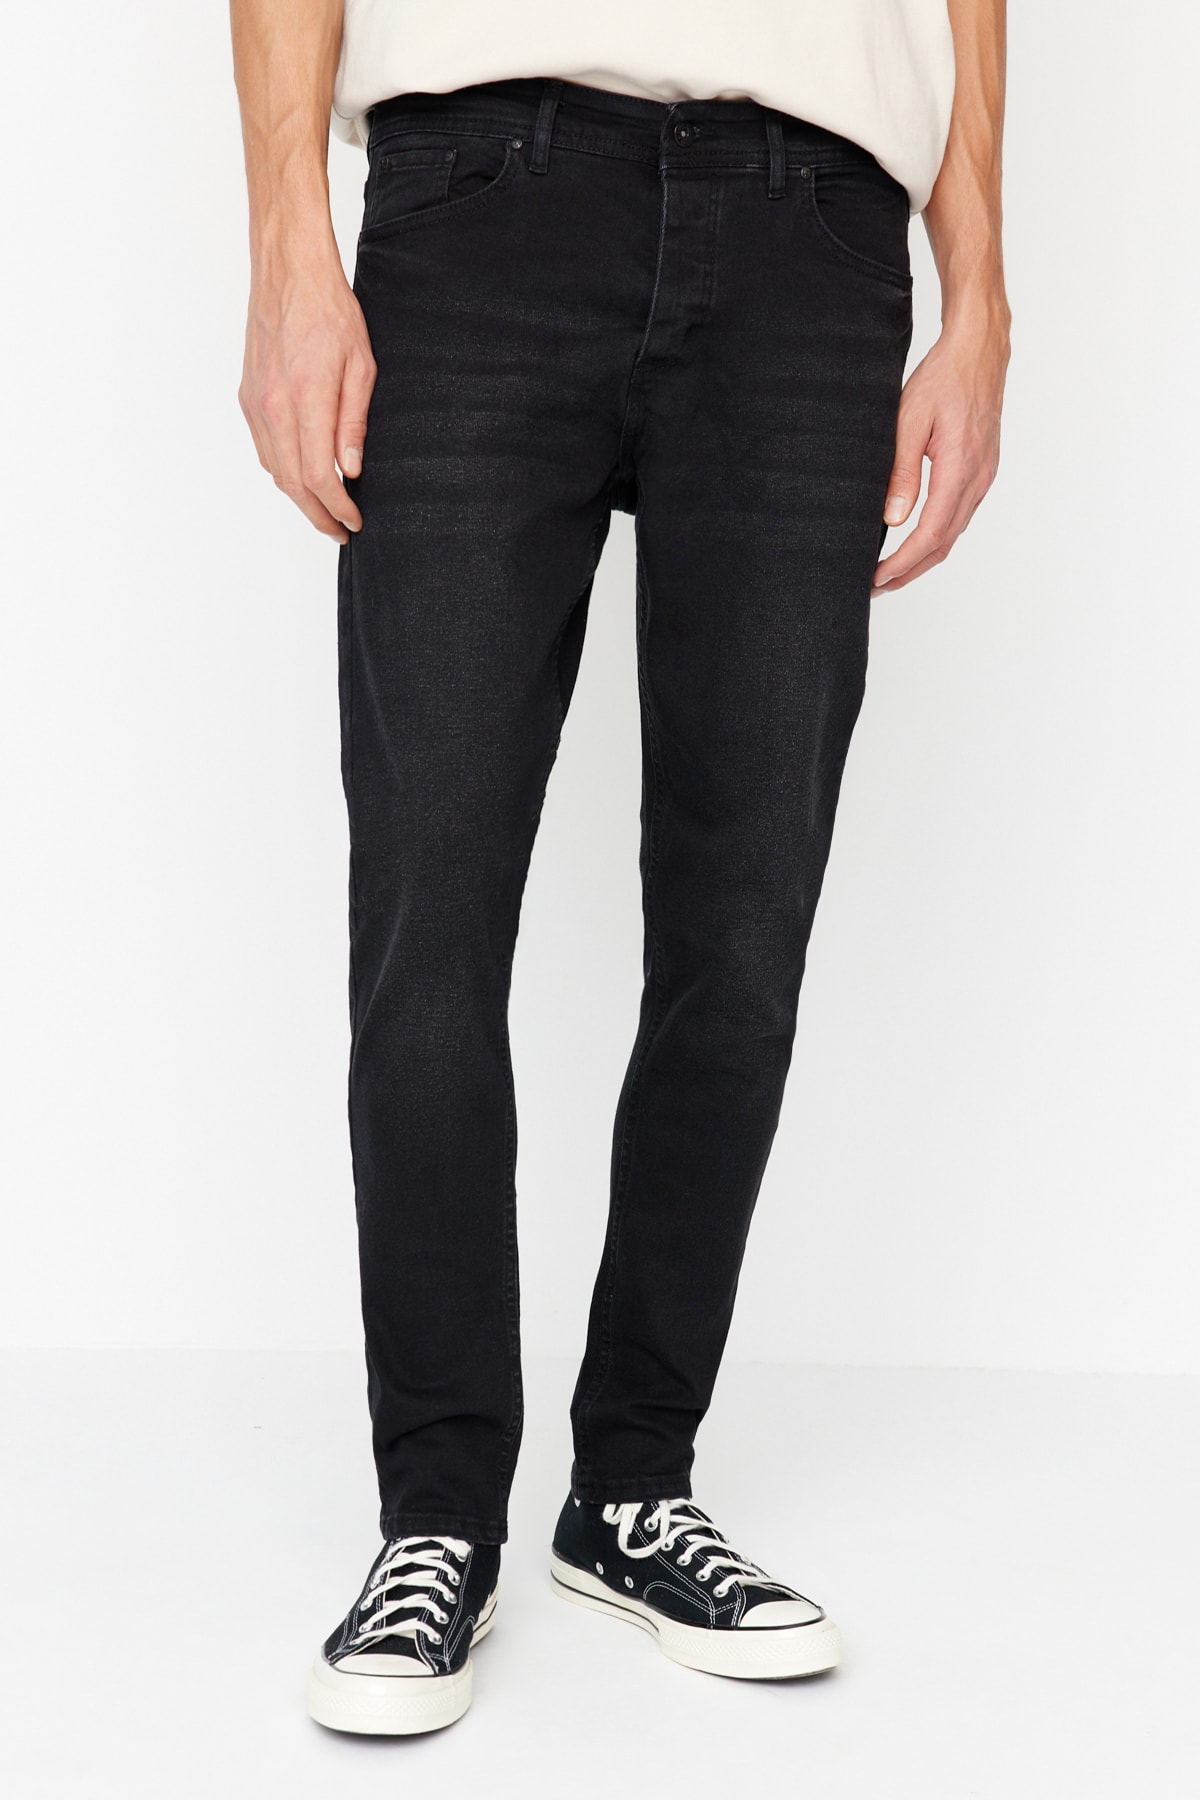 Trendyol Men's Black Skinny Fit Jeans